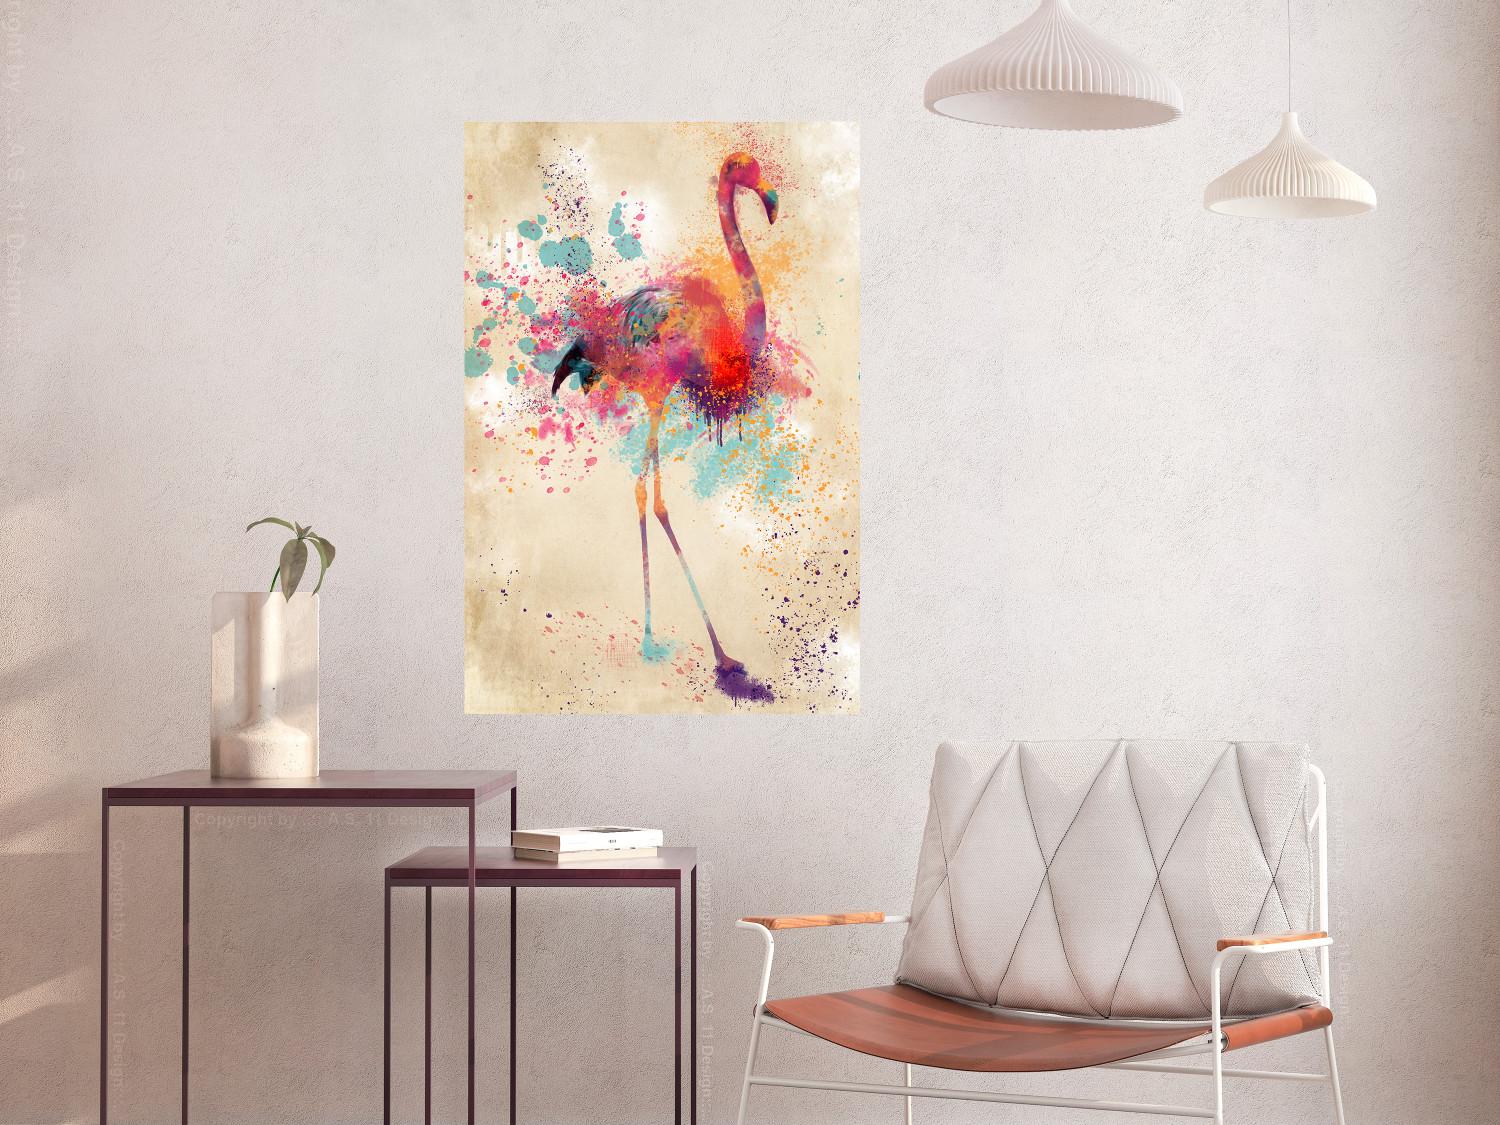 Poster Flamenco de acuarela - abstracción colorida alegórica con ave vivaz